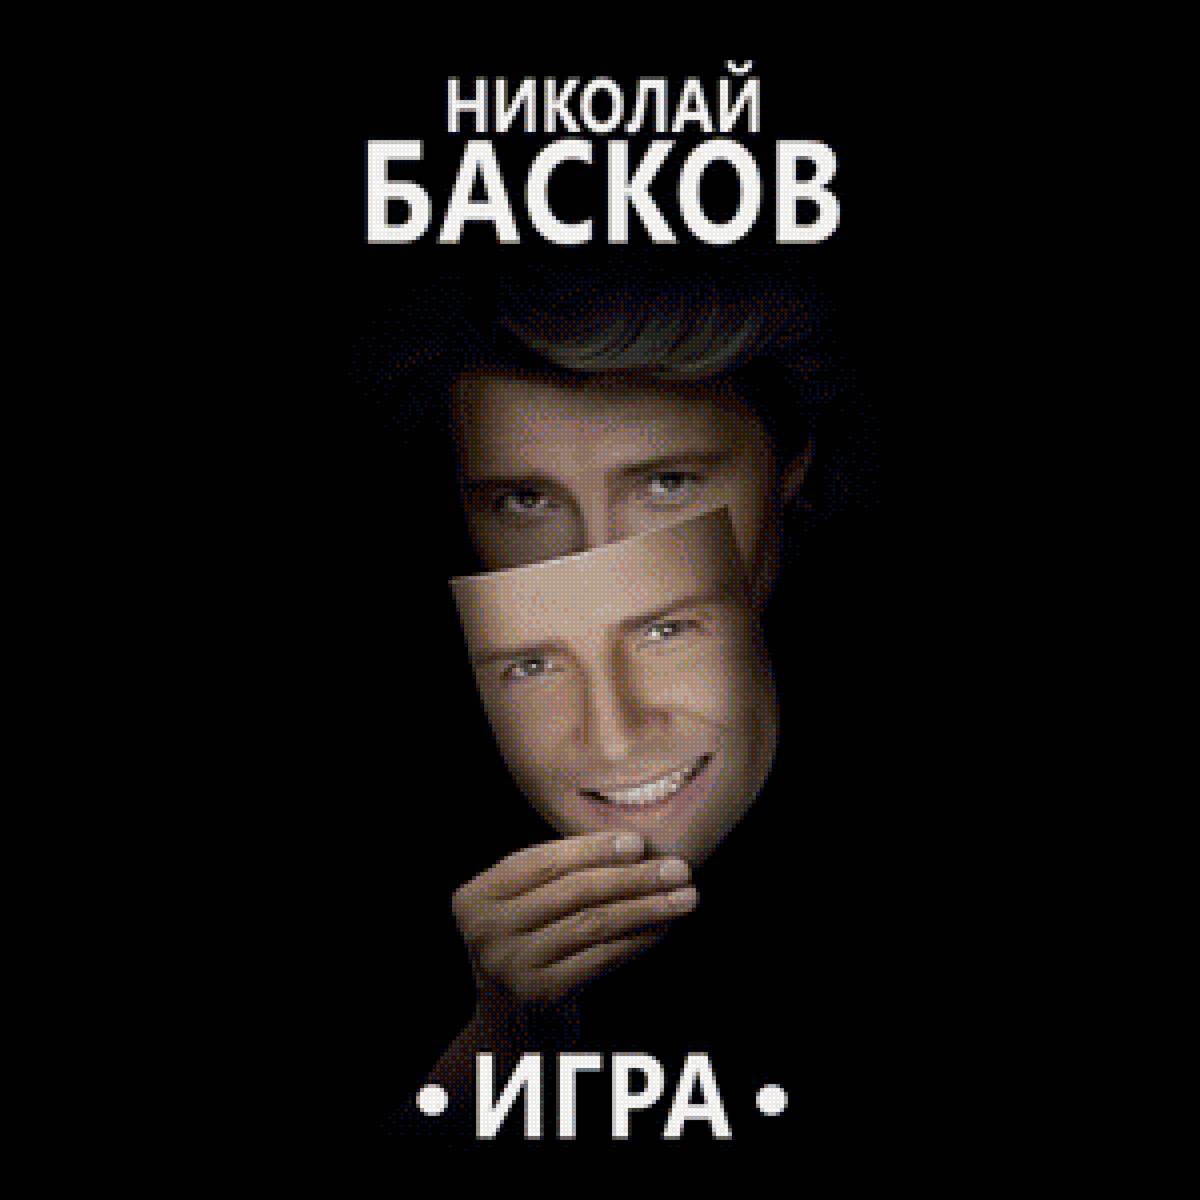 Николай Басков - кумир, знаменитость, певец - предпросмотр